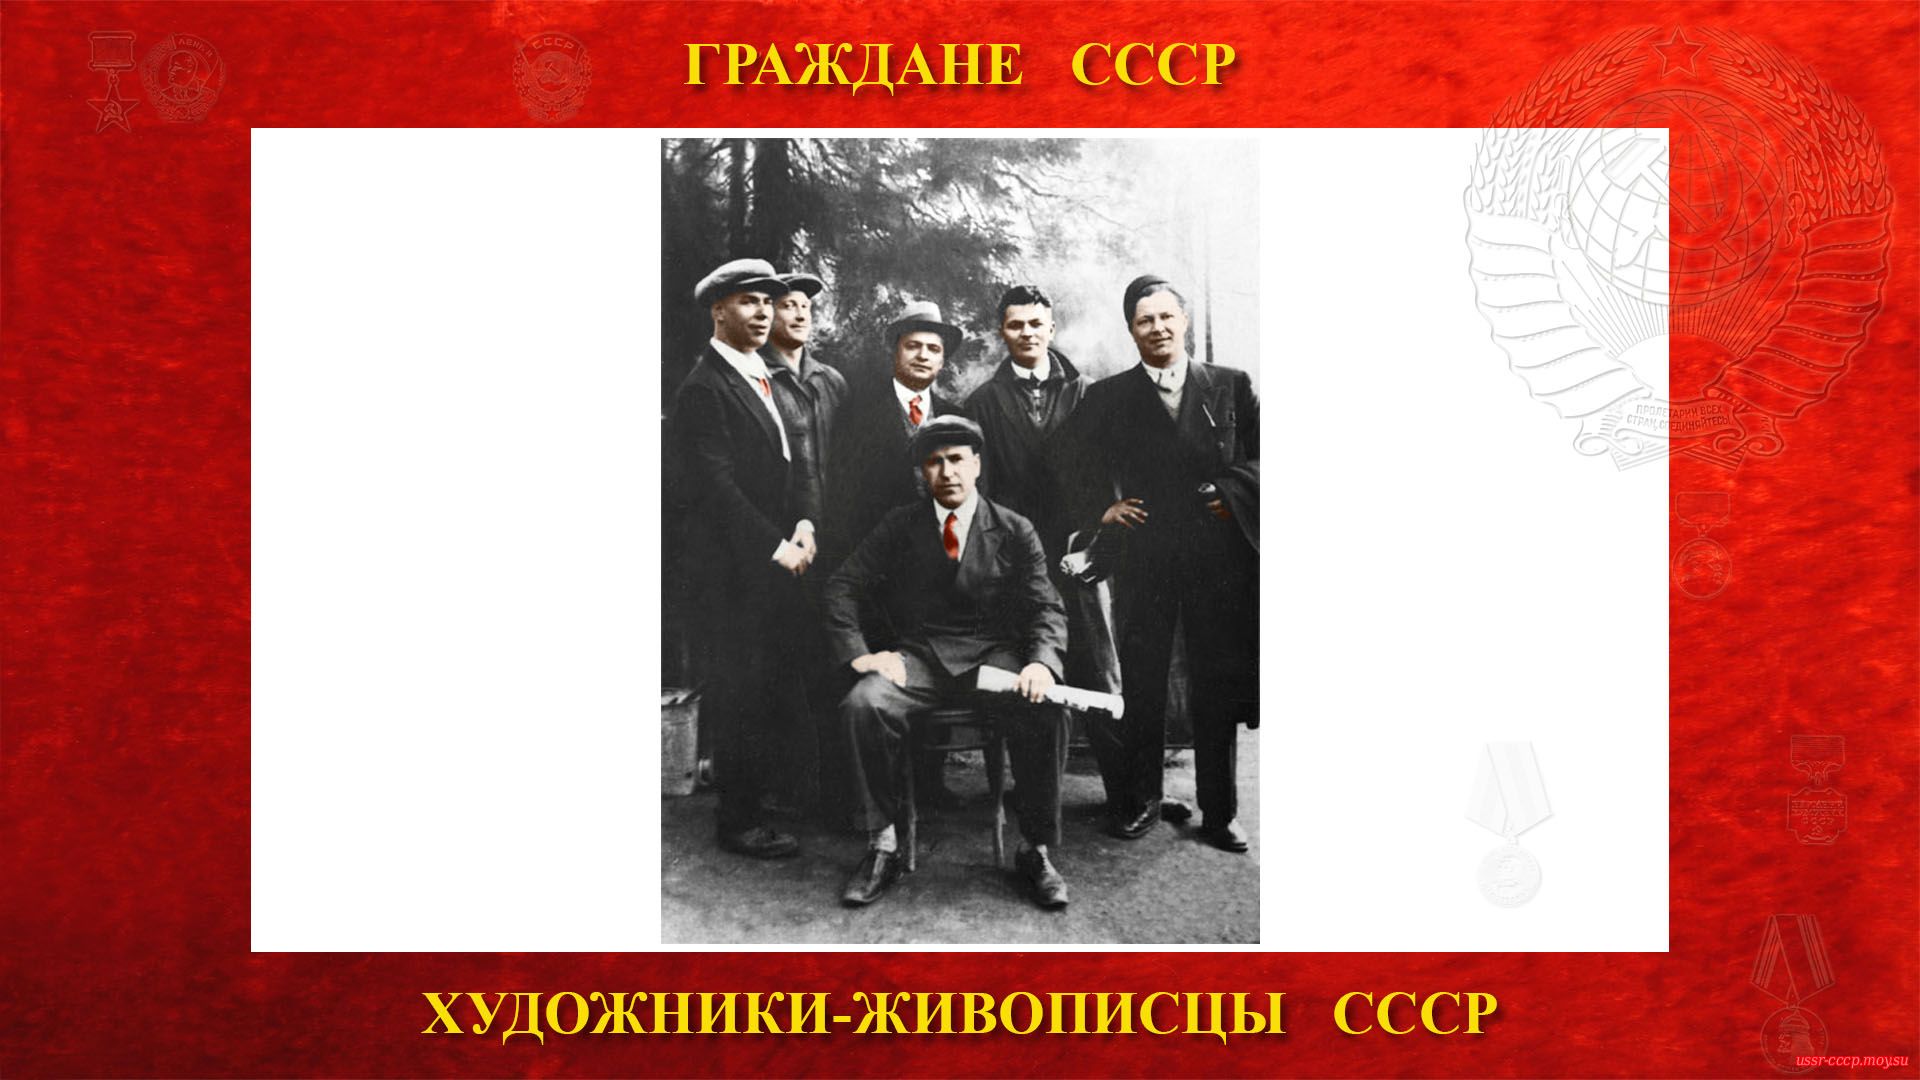 Первый ряд: Александр Дейнека, второй ряд: Константин Вялов, Георгий Нисский, Георгий Ряжский, Фёдор Антонов, Фёдор Богородский (1953 год).